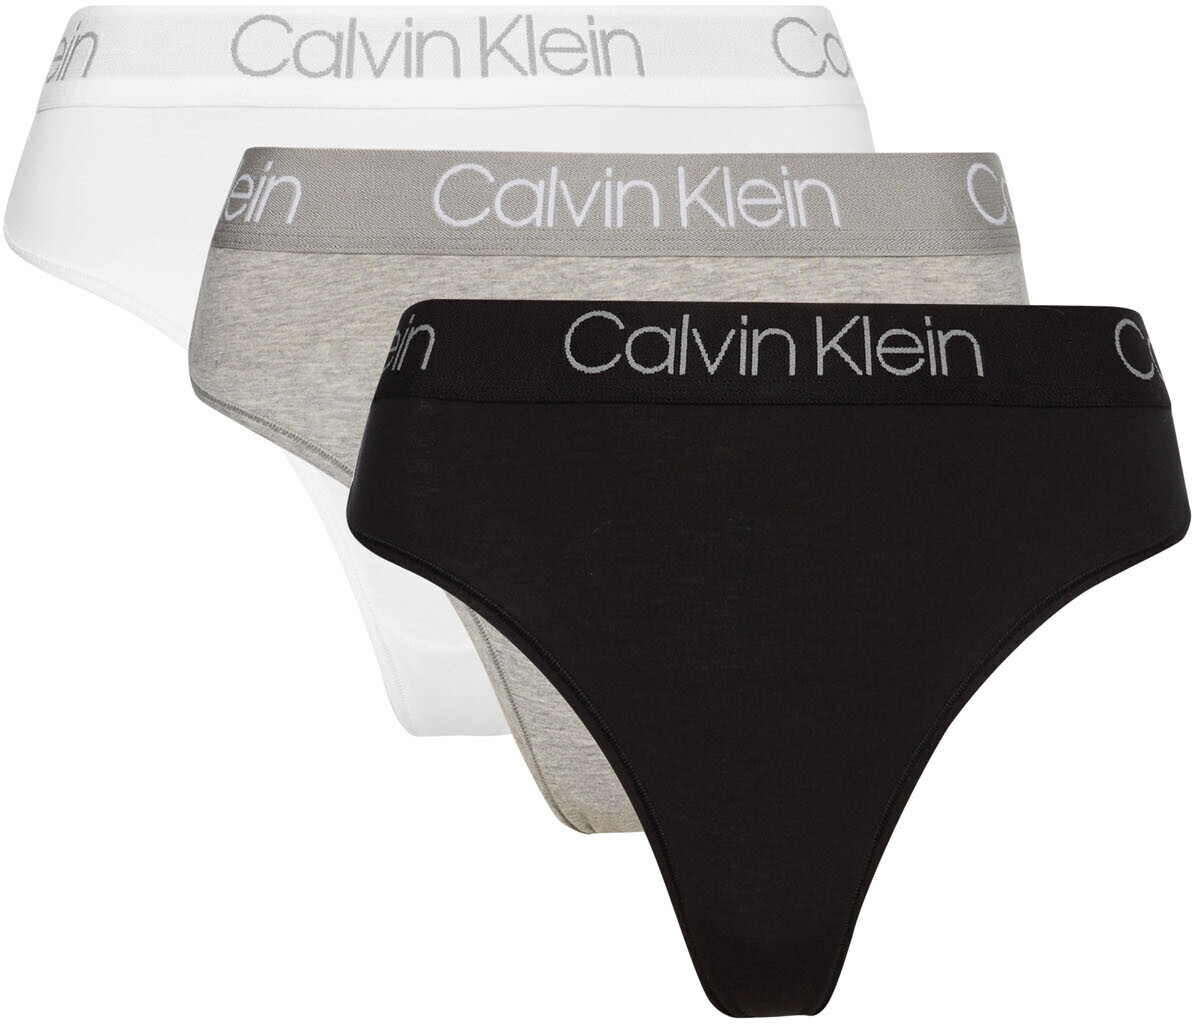 Calvin Klein Body - 3 Pack High-Waist-Thongs white/black/grey ab